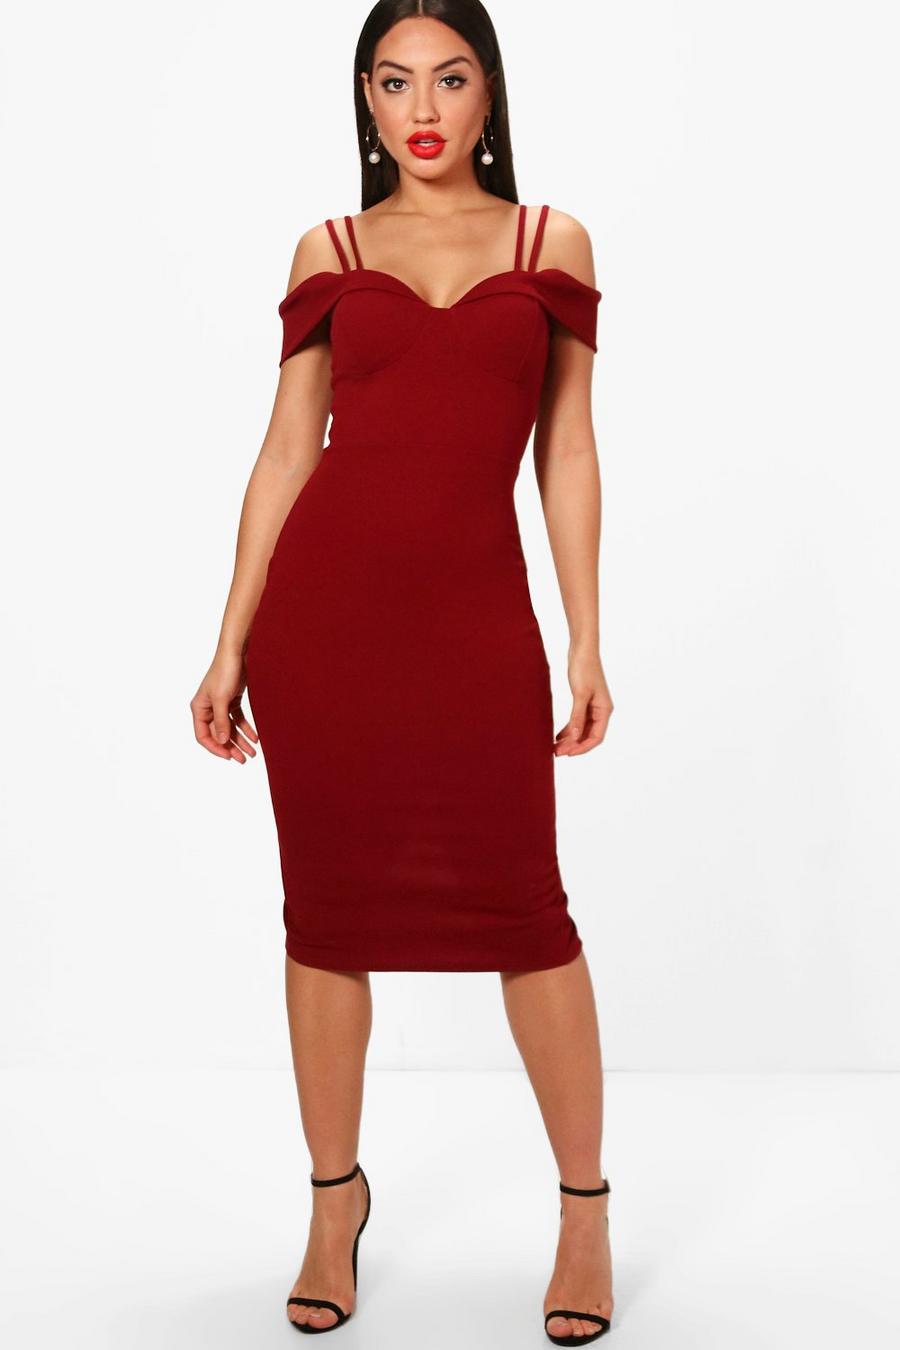 Berry red Midiklänning i cold shoulder-modell med smala axelband